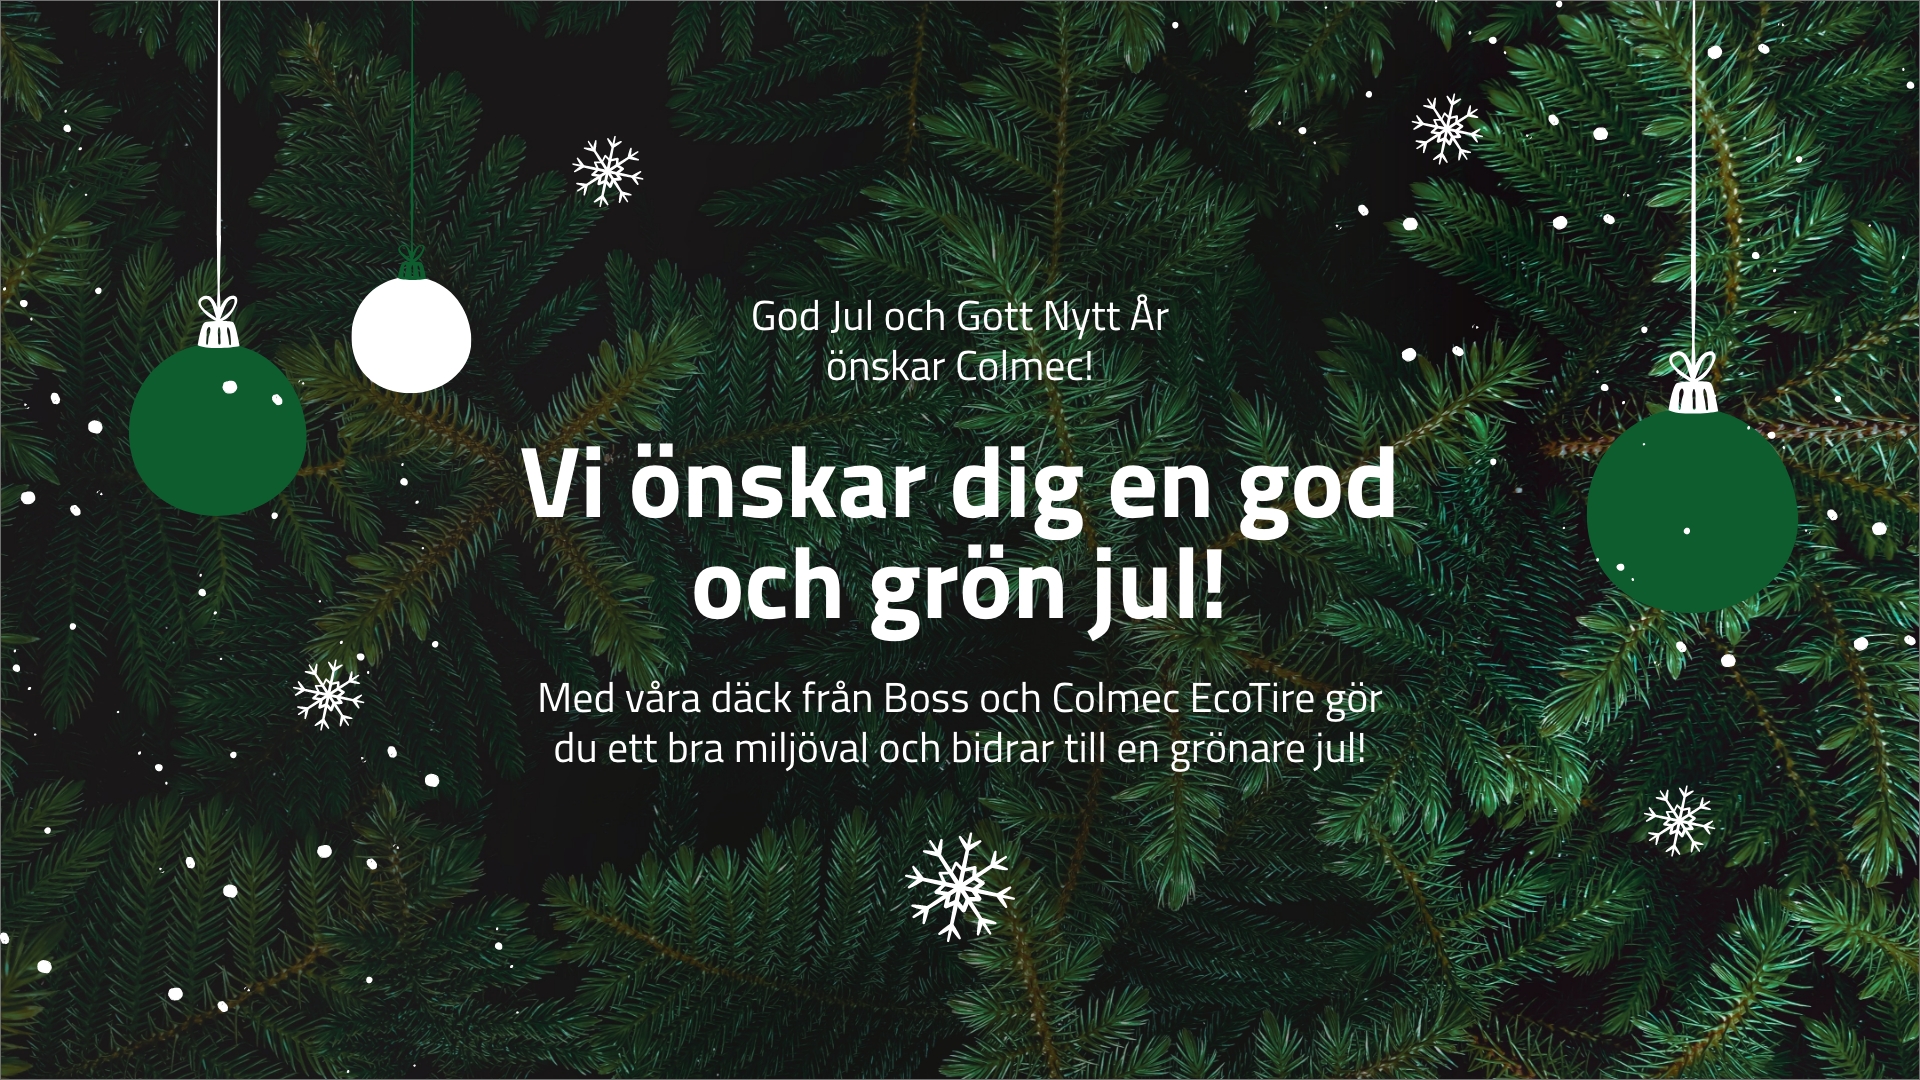 Colmec önskar er en riktigt god och grön jul!